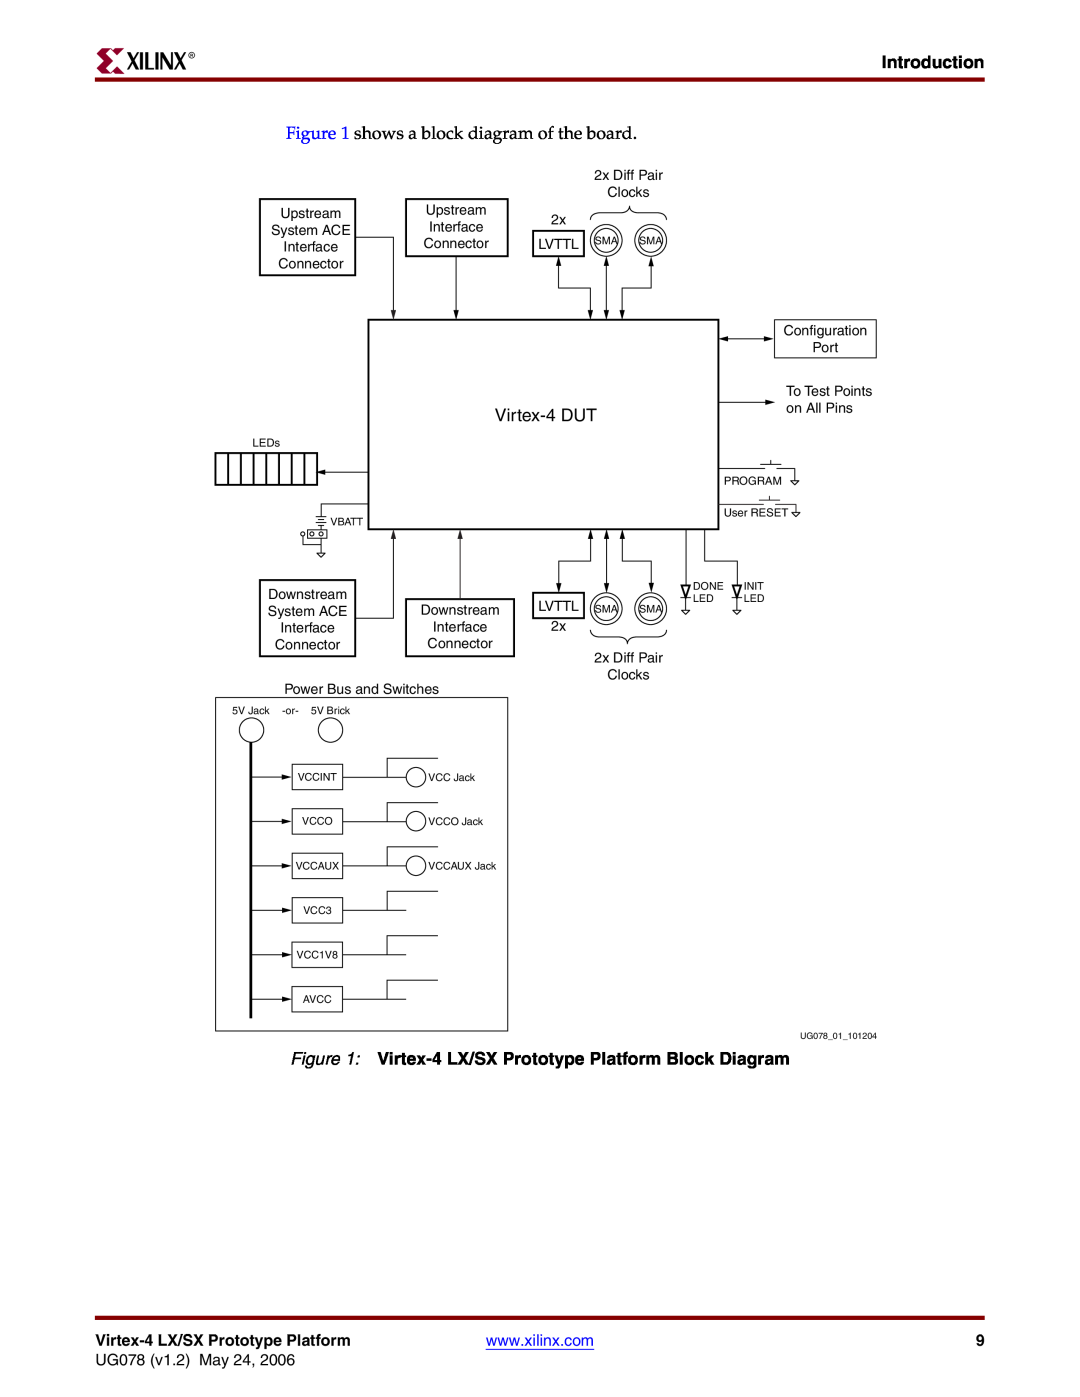 Xilinx manual Virtex-4DUT, Introduction, shows a block diagram of the board, UG078 v1.2 May 